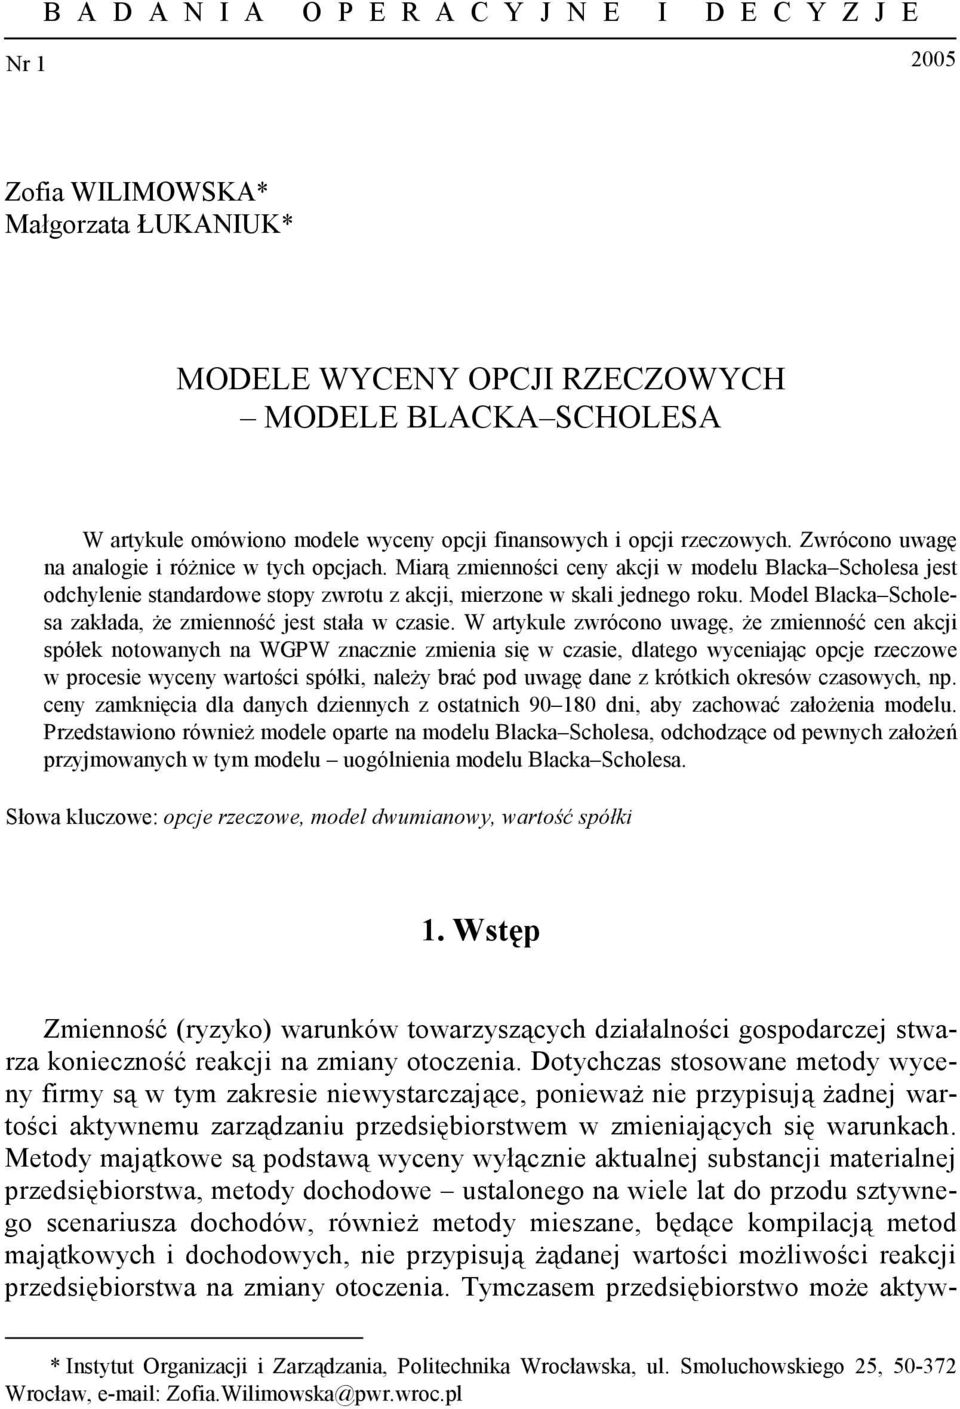 Model Blacka cholesa zakłada, że zmienność jest stała w czasie.